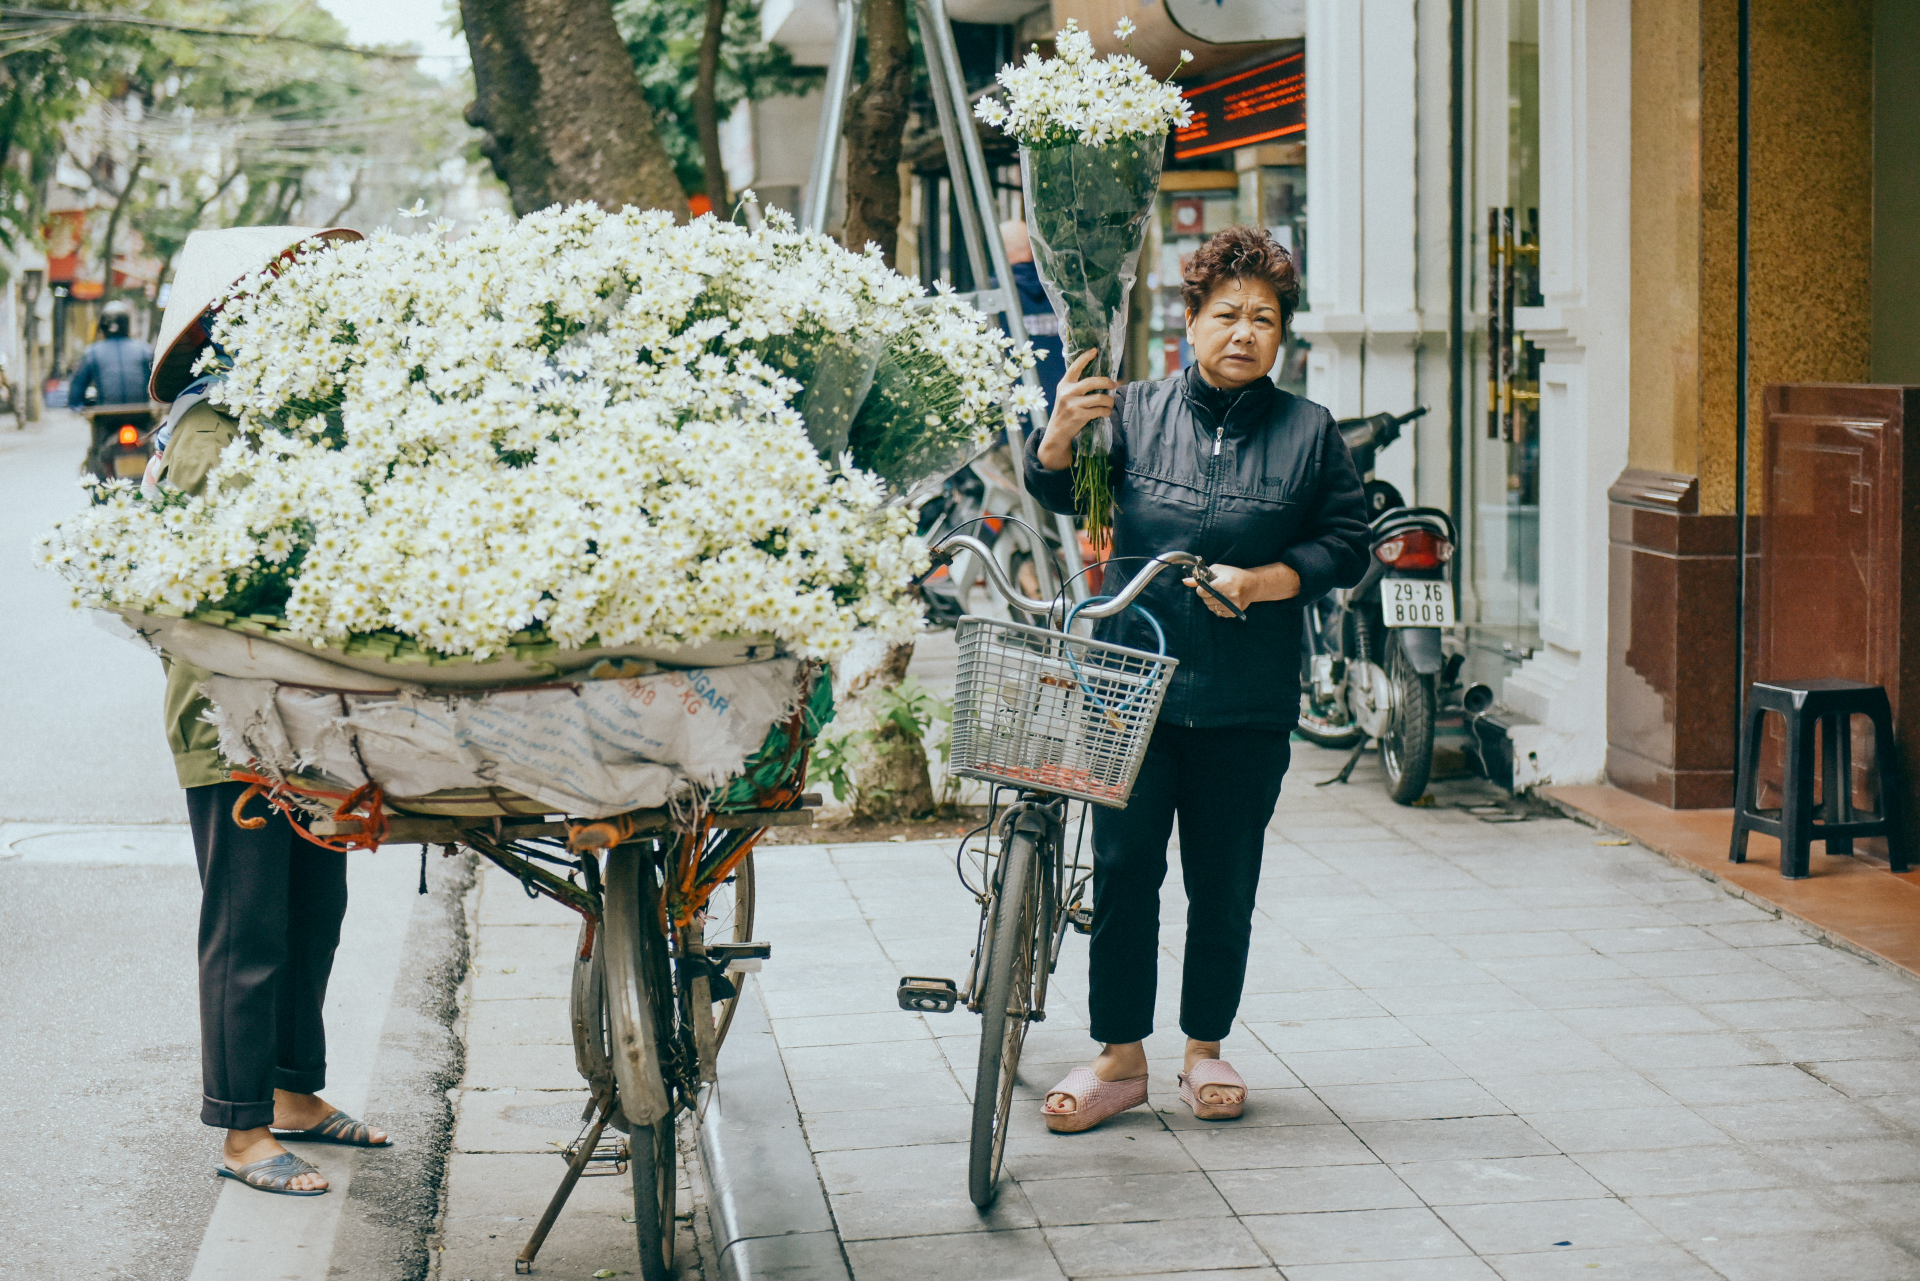 Cúc hoạ mi thường không bán ở các hàng hoa mà chỉ có các xe chở rong.Và các bà các mẹ vô tình đi ngang trông thấy sẽ dừng lại mua một bó về làm đẹp cho ngôi nhà của mình